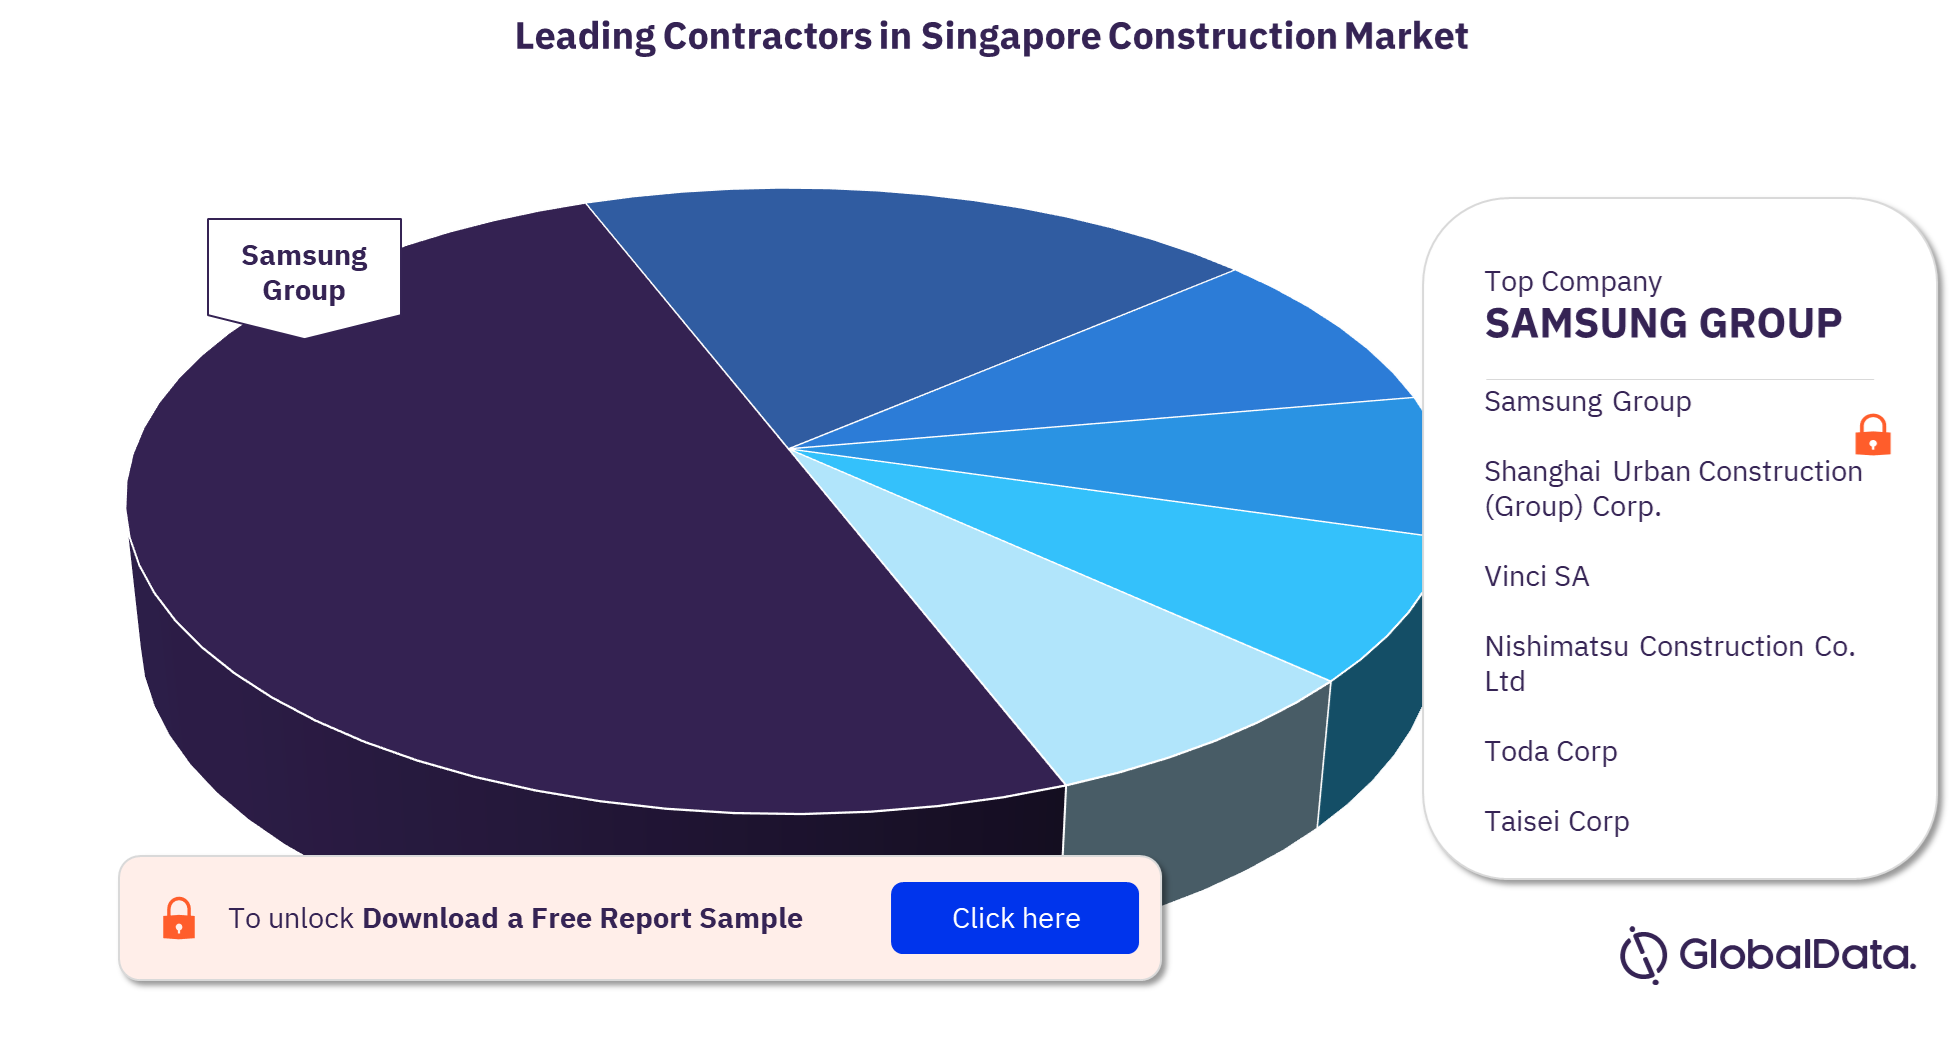 Singapore construction market, by key contractors